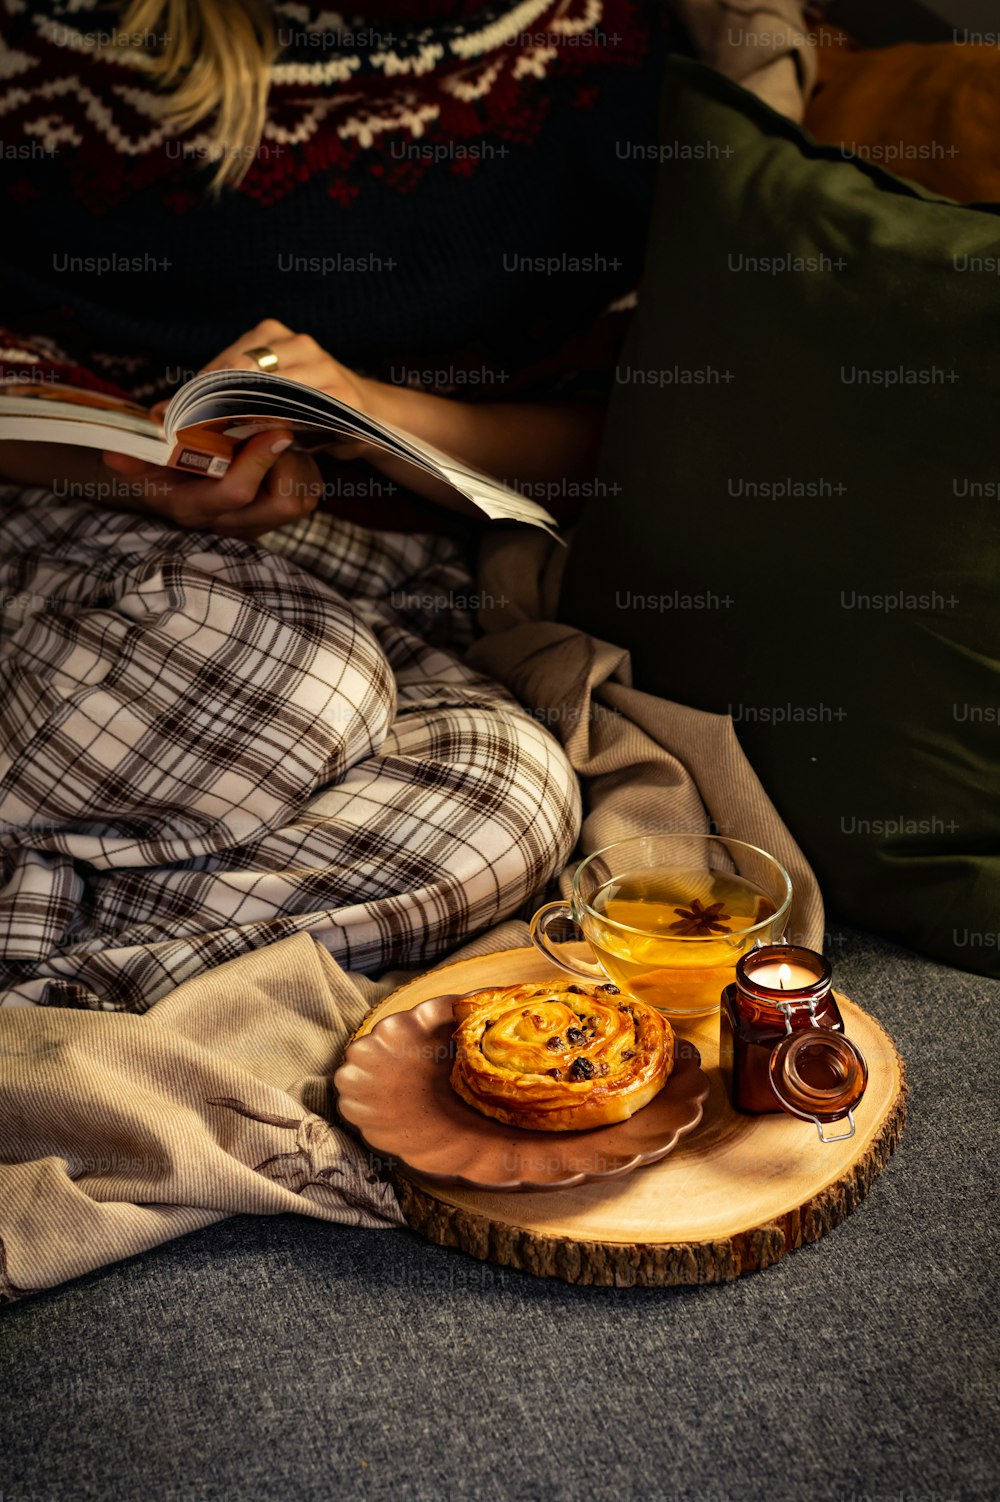 Una persona sentada en un sofá con un plato de comida y una taza de té